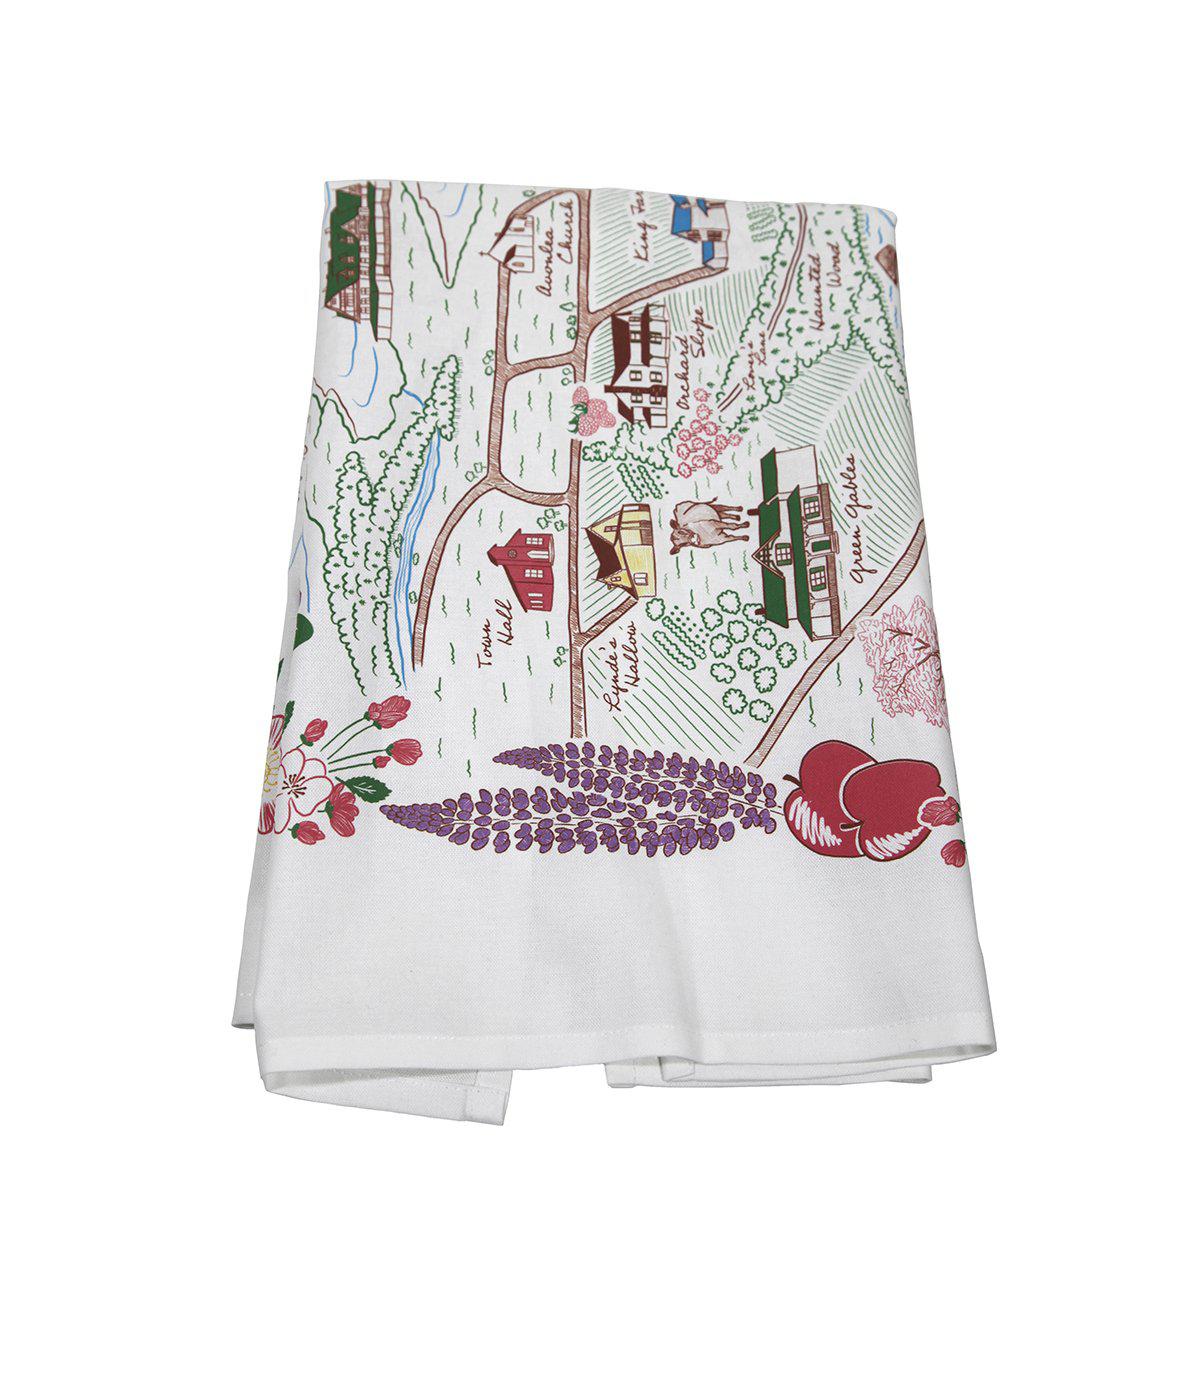 "Avonlea" Illustrated Tea Towel